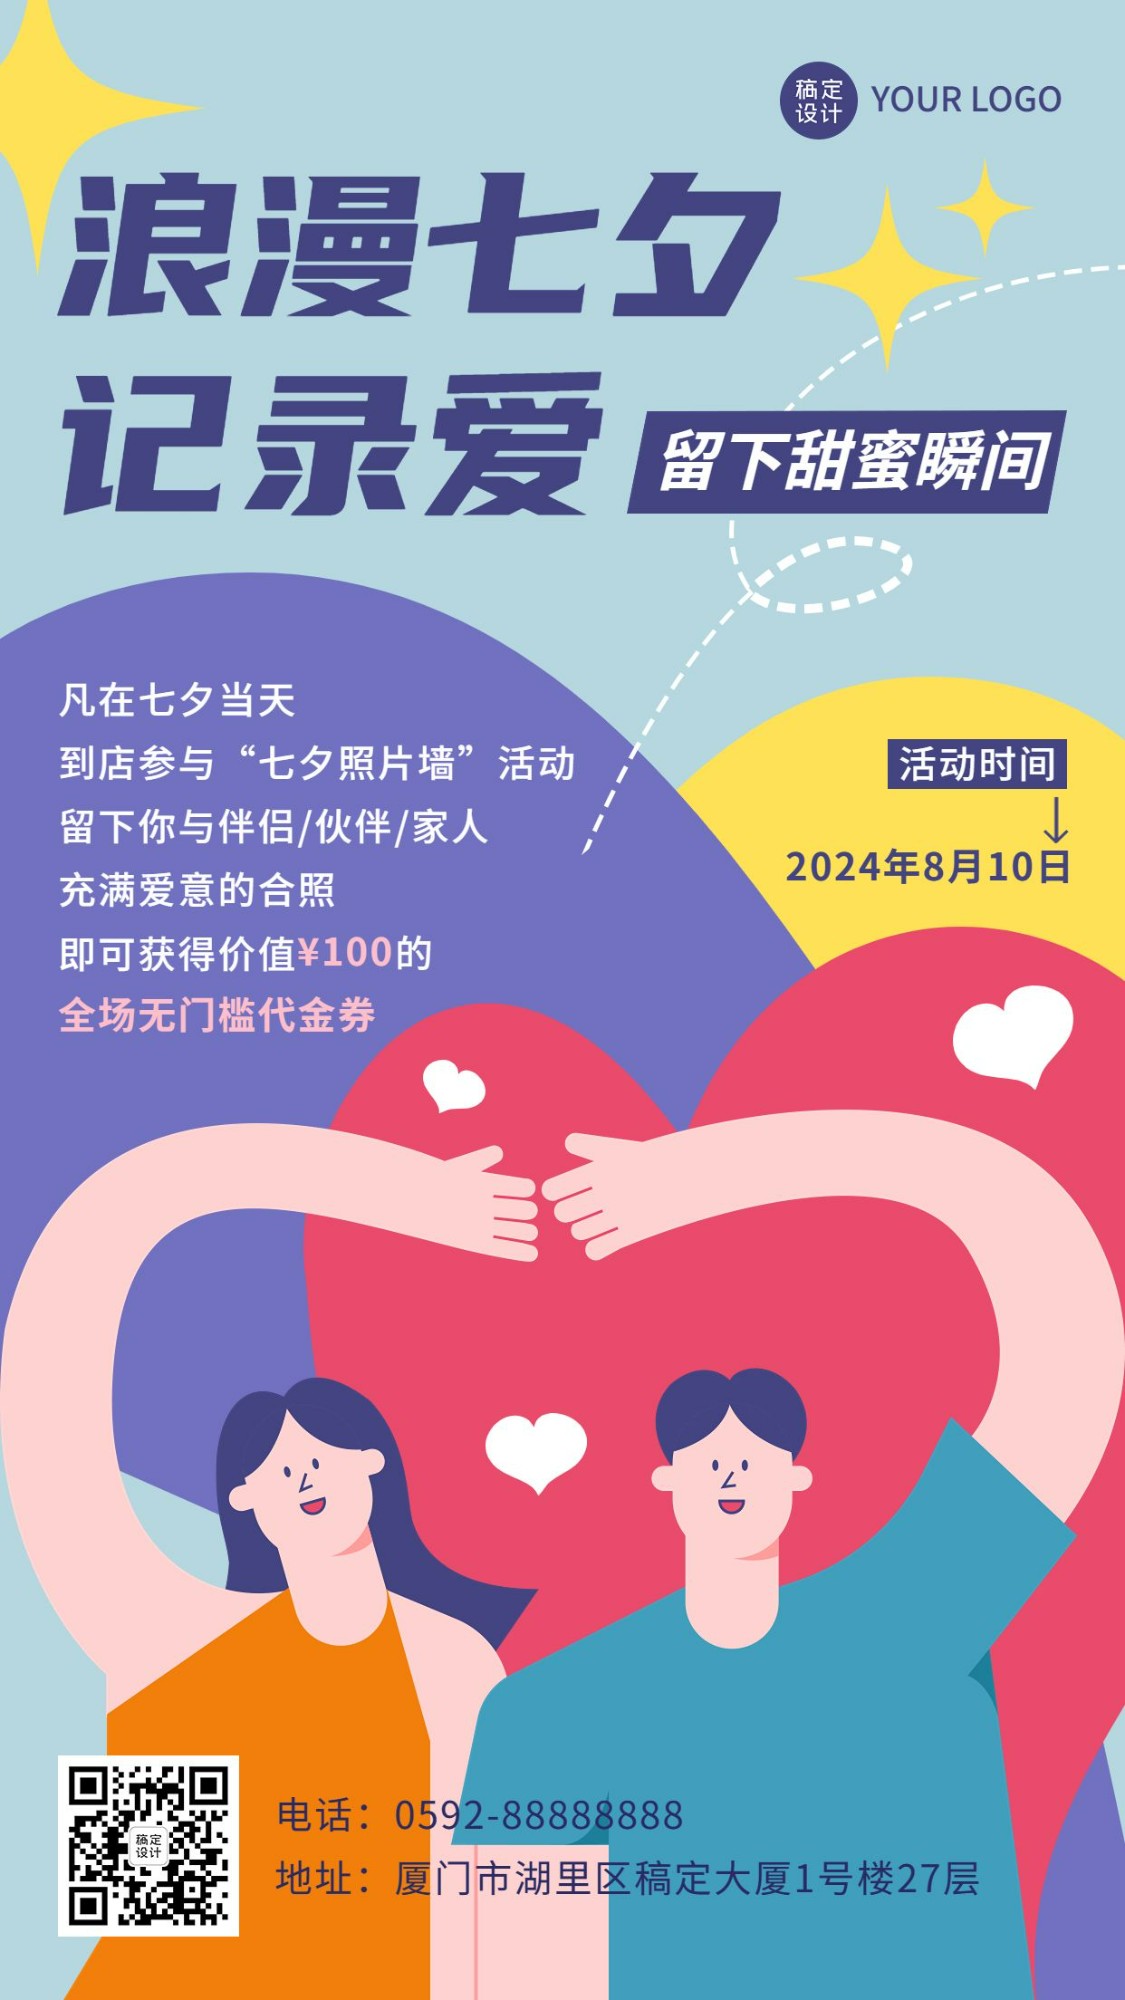 七夕情人节节日活动通知公告创意手机海报预览效果